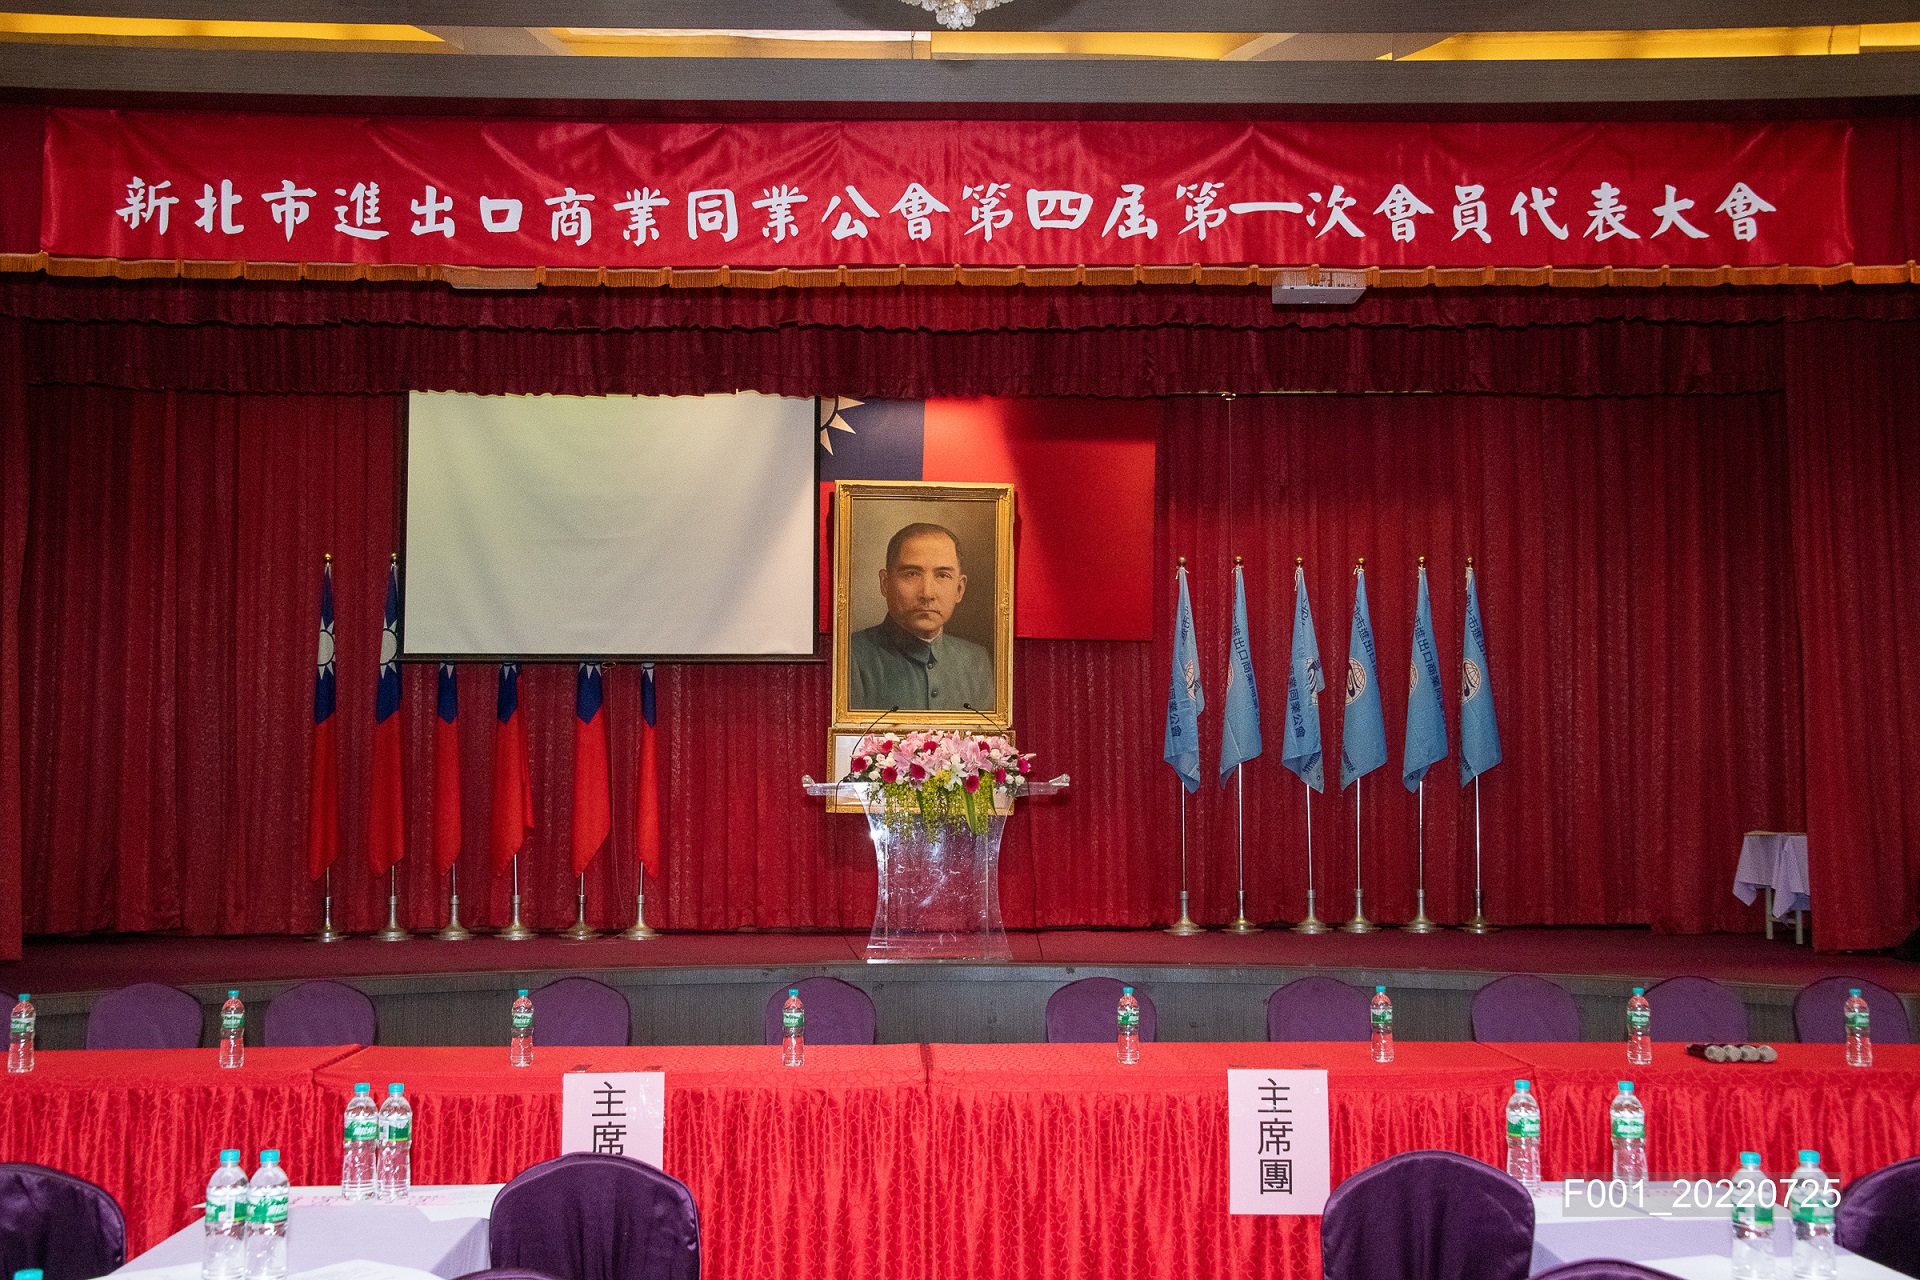 本會於111年7月25日(星期一)下午3:00假台北國軍英雄館1樓宴會廳召開會員代表大會，完成各項提案及年度報告，改選第四屆理監事，大會圓滿成功.